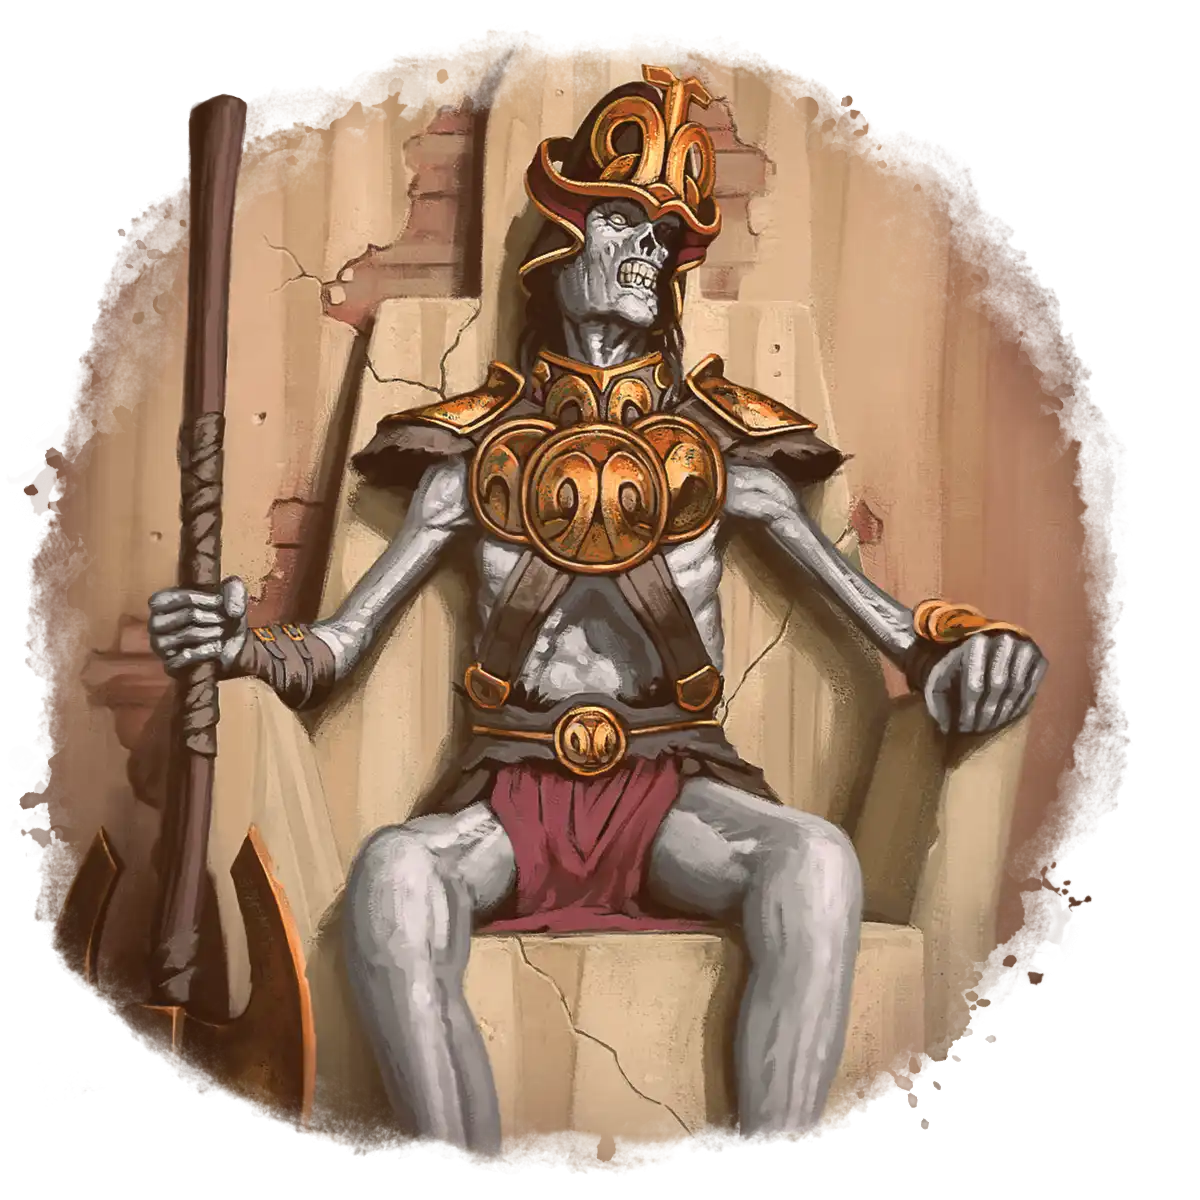 Atlantean King’s Skeleton on Throne